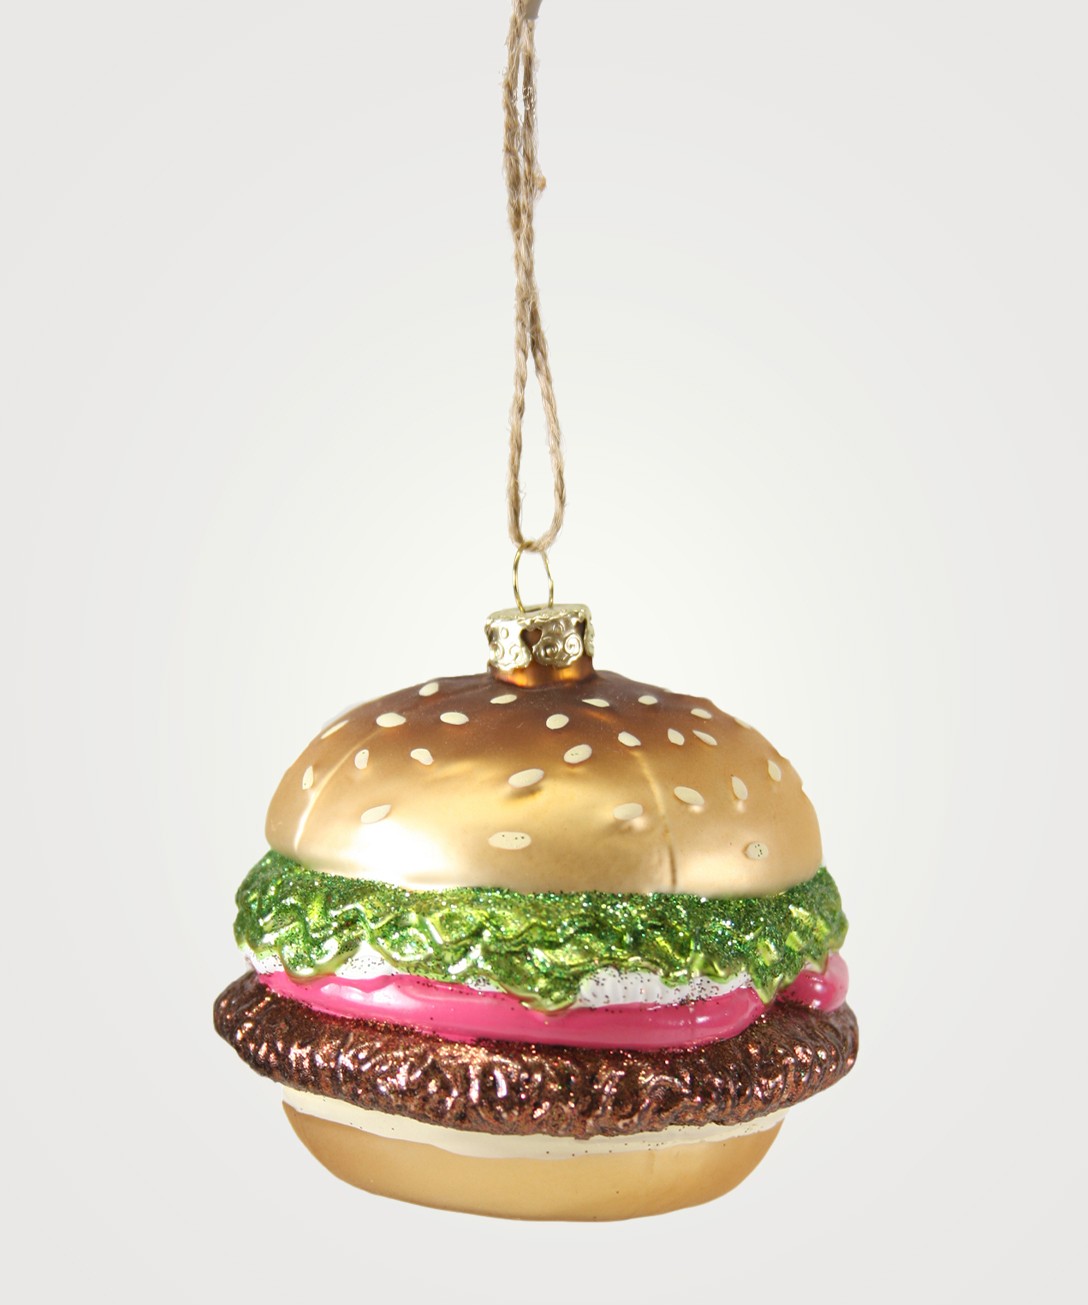 Image of a hamburger ornament.